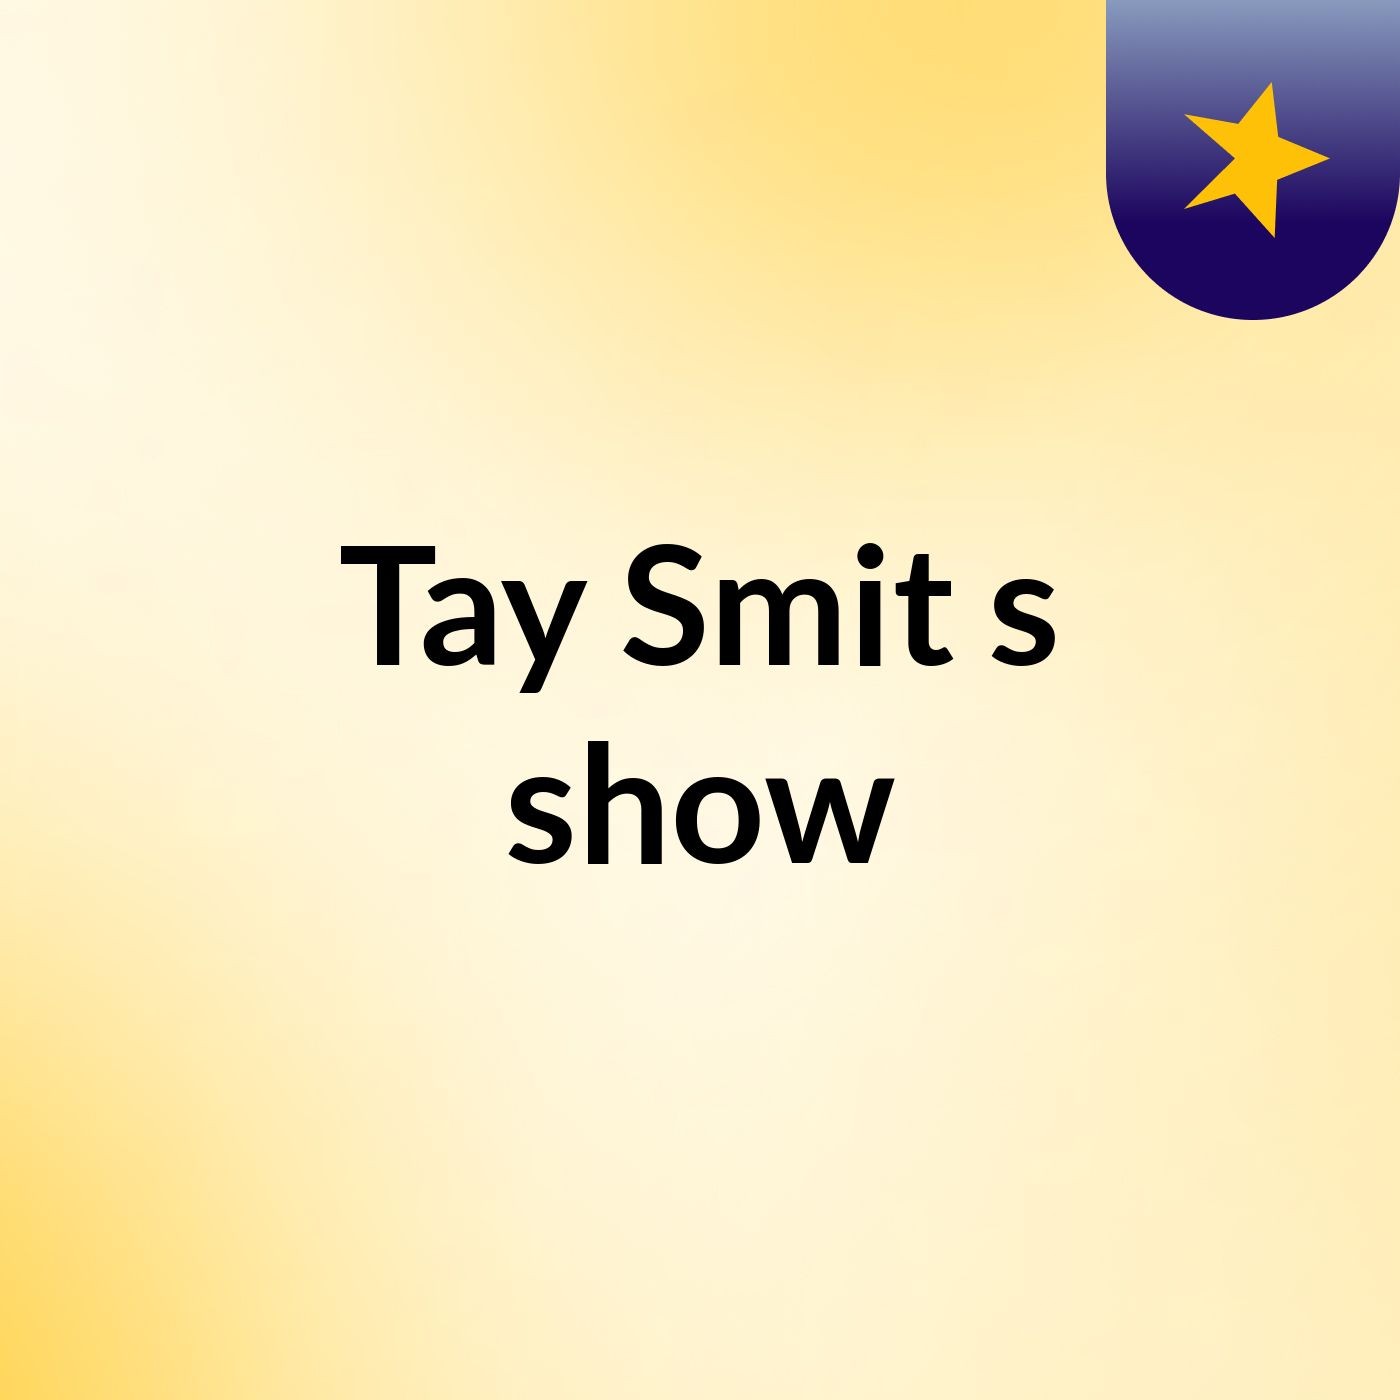 Tay Smit's show